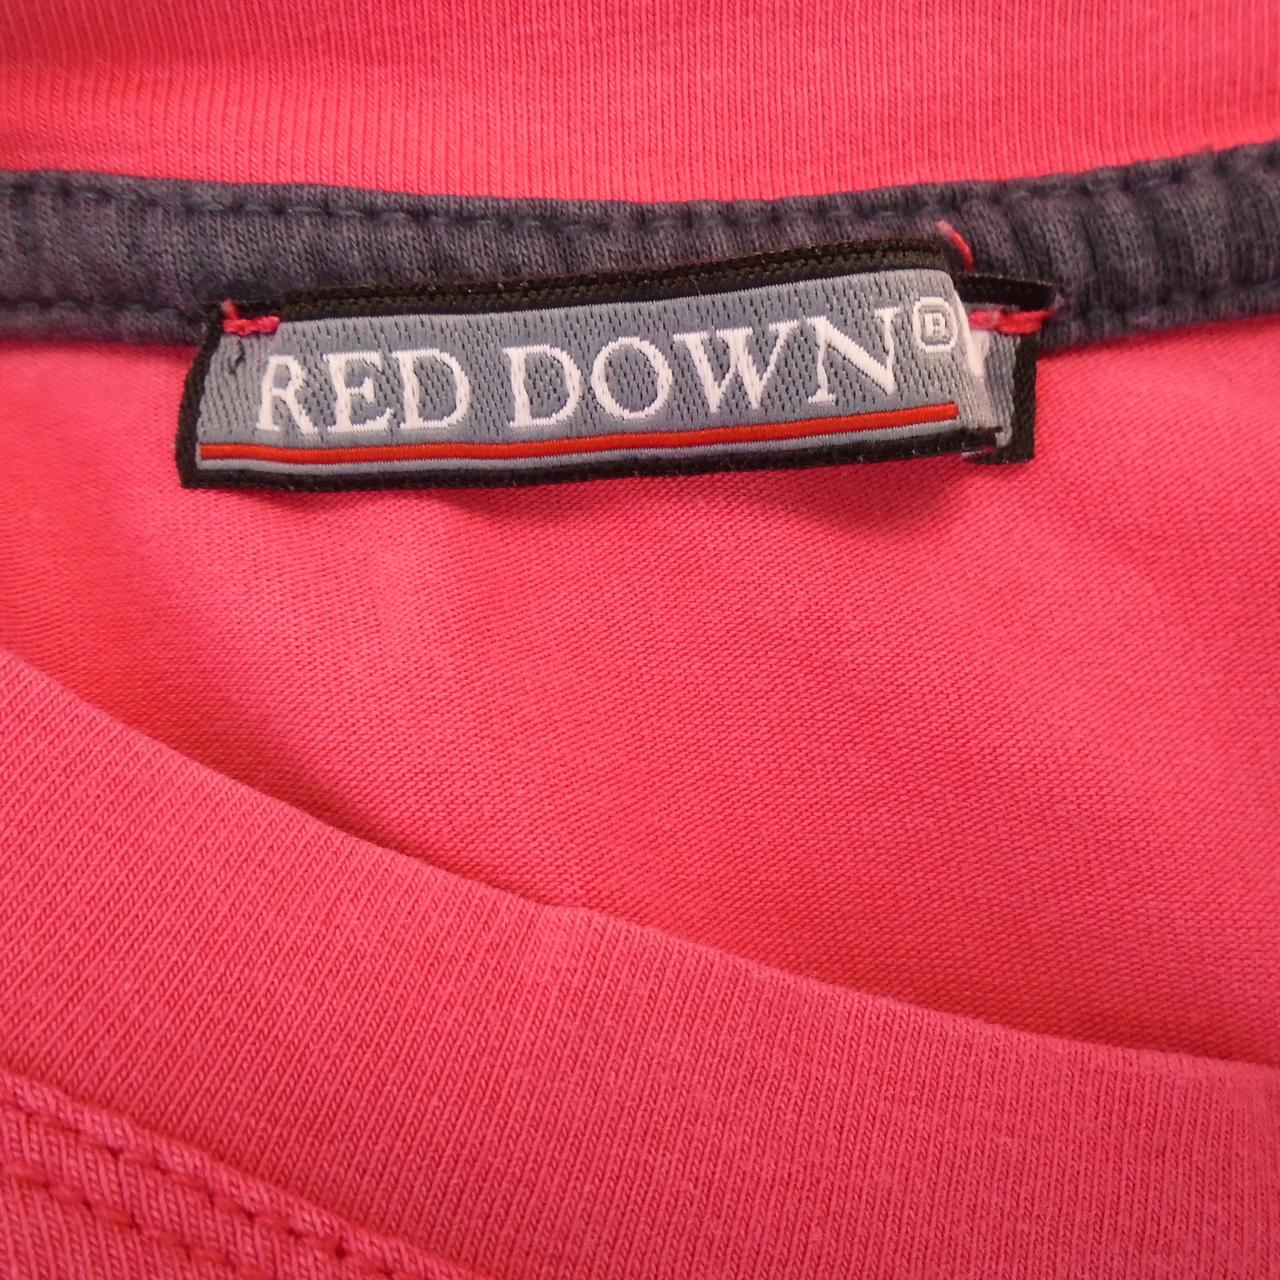 Damen T-Shirt Rot Daunen.  Rosa.  XL.  Gebraucht.  Gut